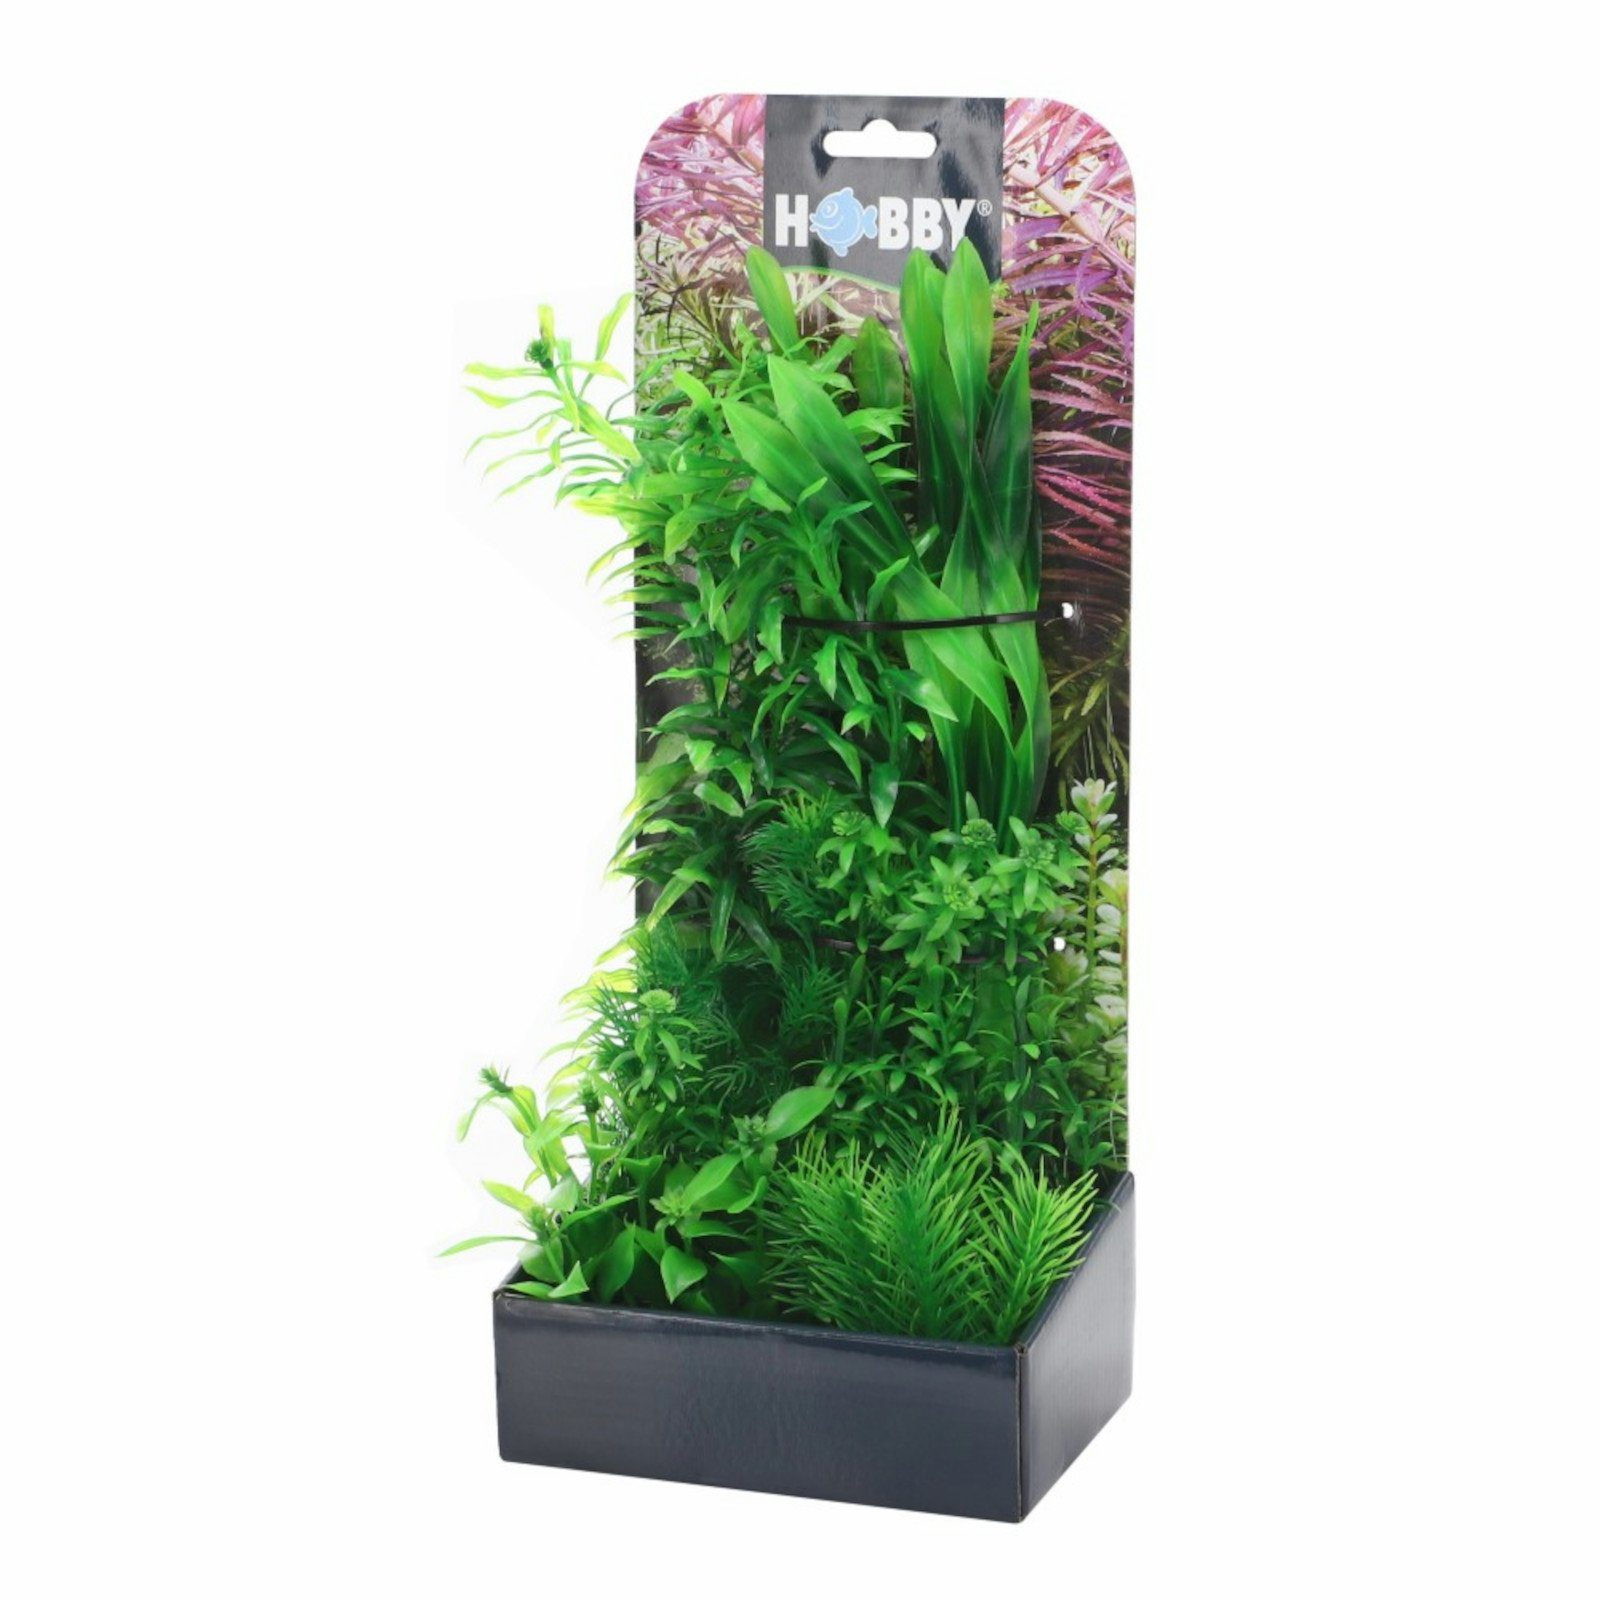 HOBBY Aquariendeko Hobby Plantasy Set 4 - enthält 6 künstliche Aquarienpflanzen